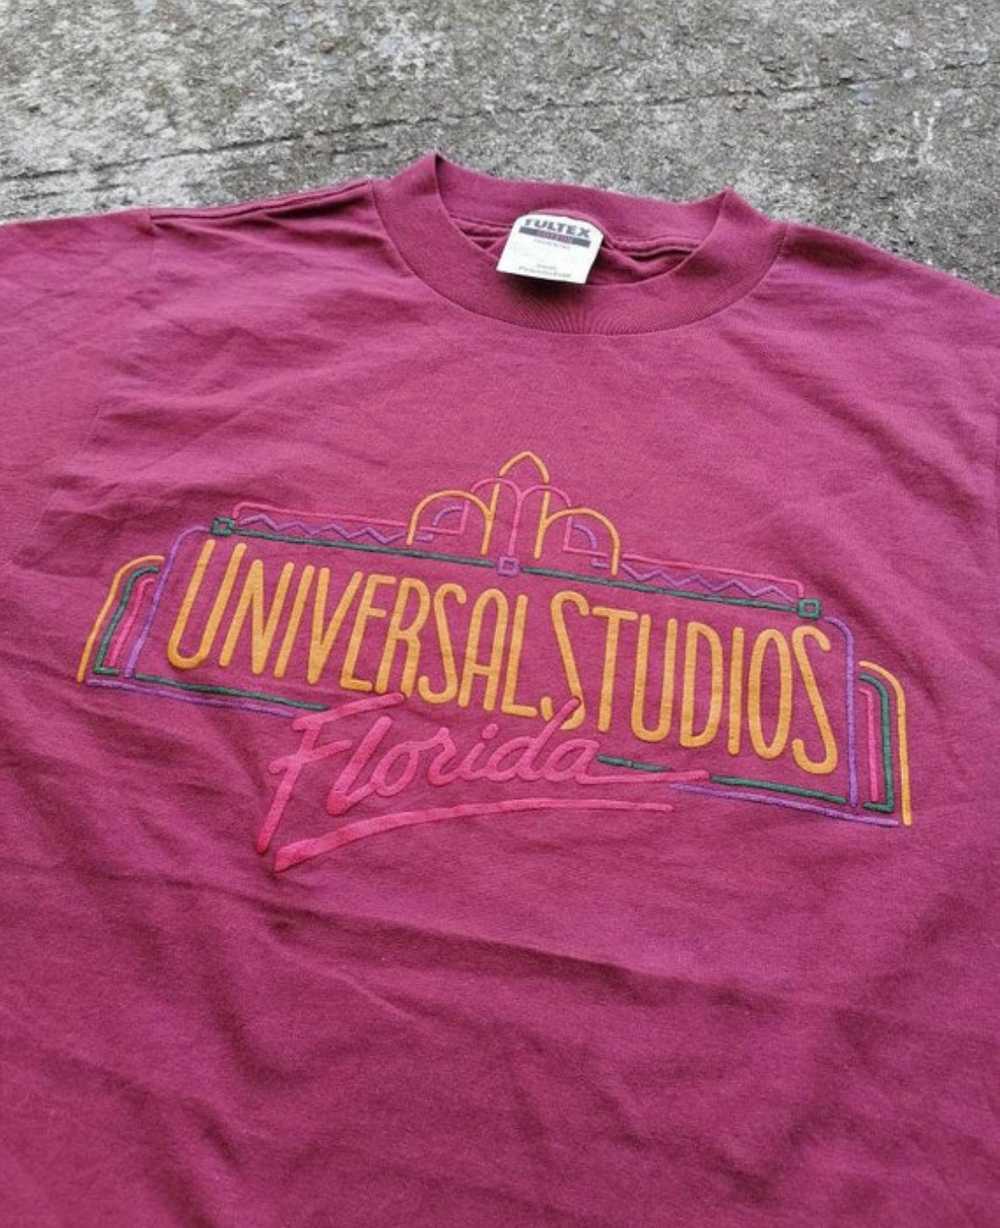 Universal Studios Florida TULTEX Tee - image 3